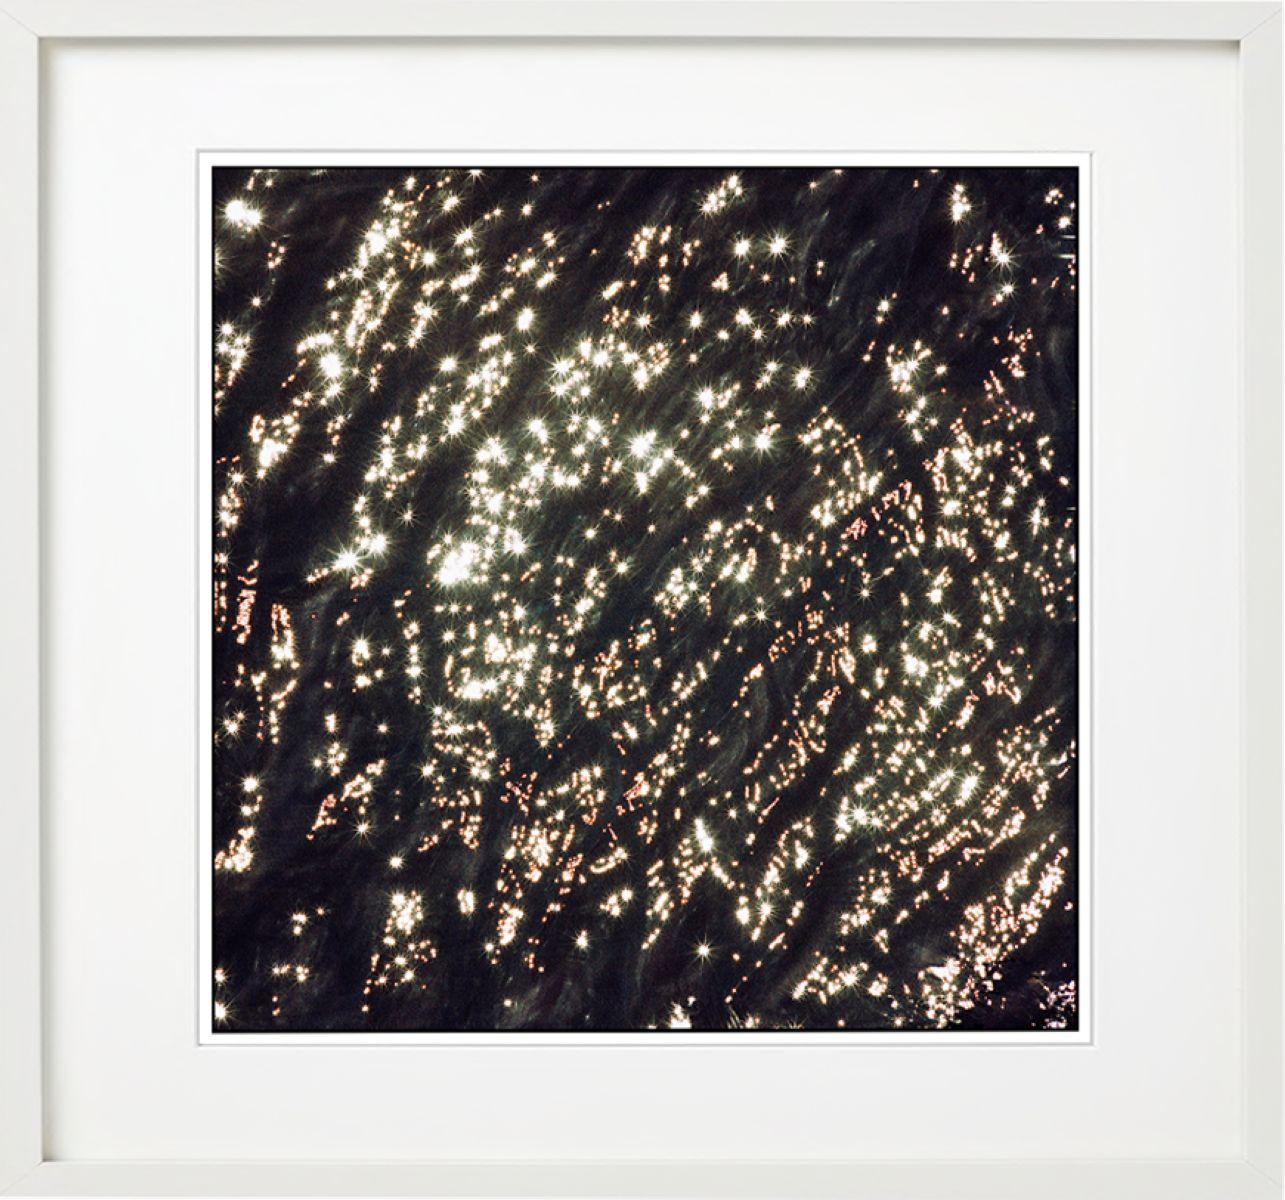 River Sun – Lichtreflexionen auf Wasser, Kunstfotografie, 2021